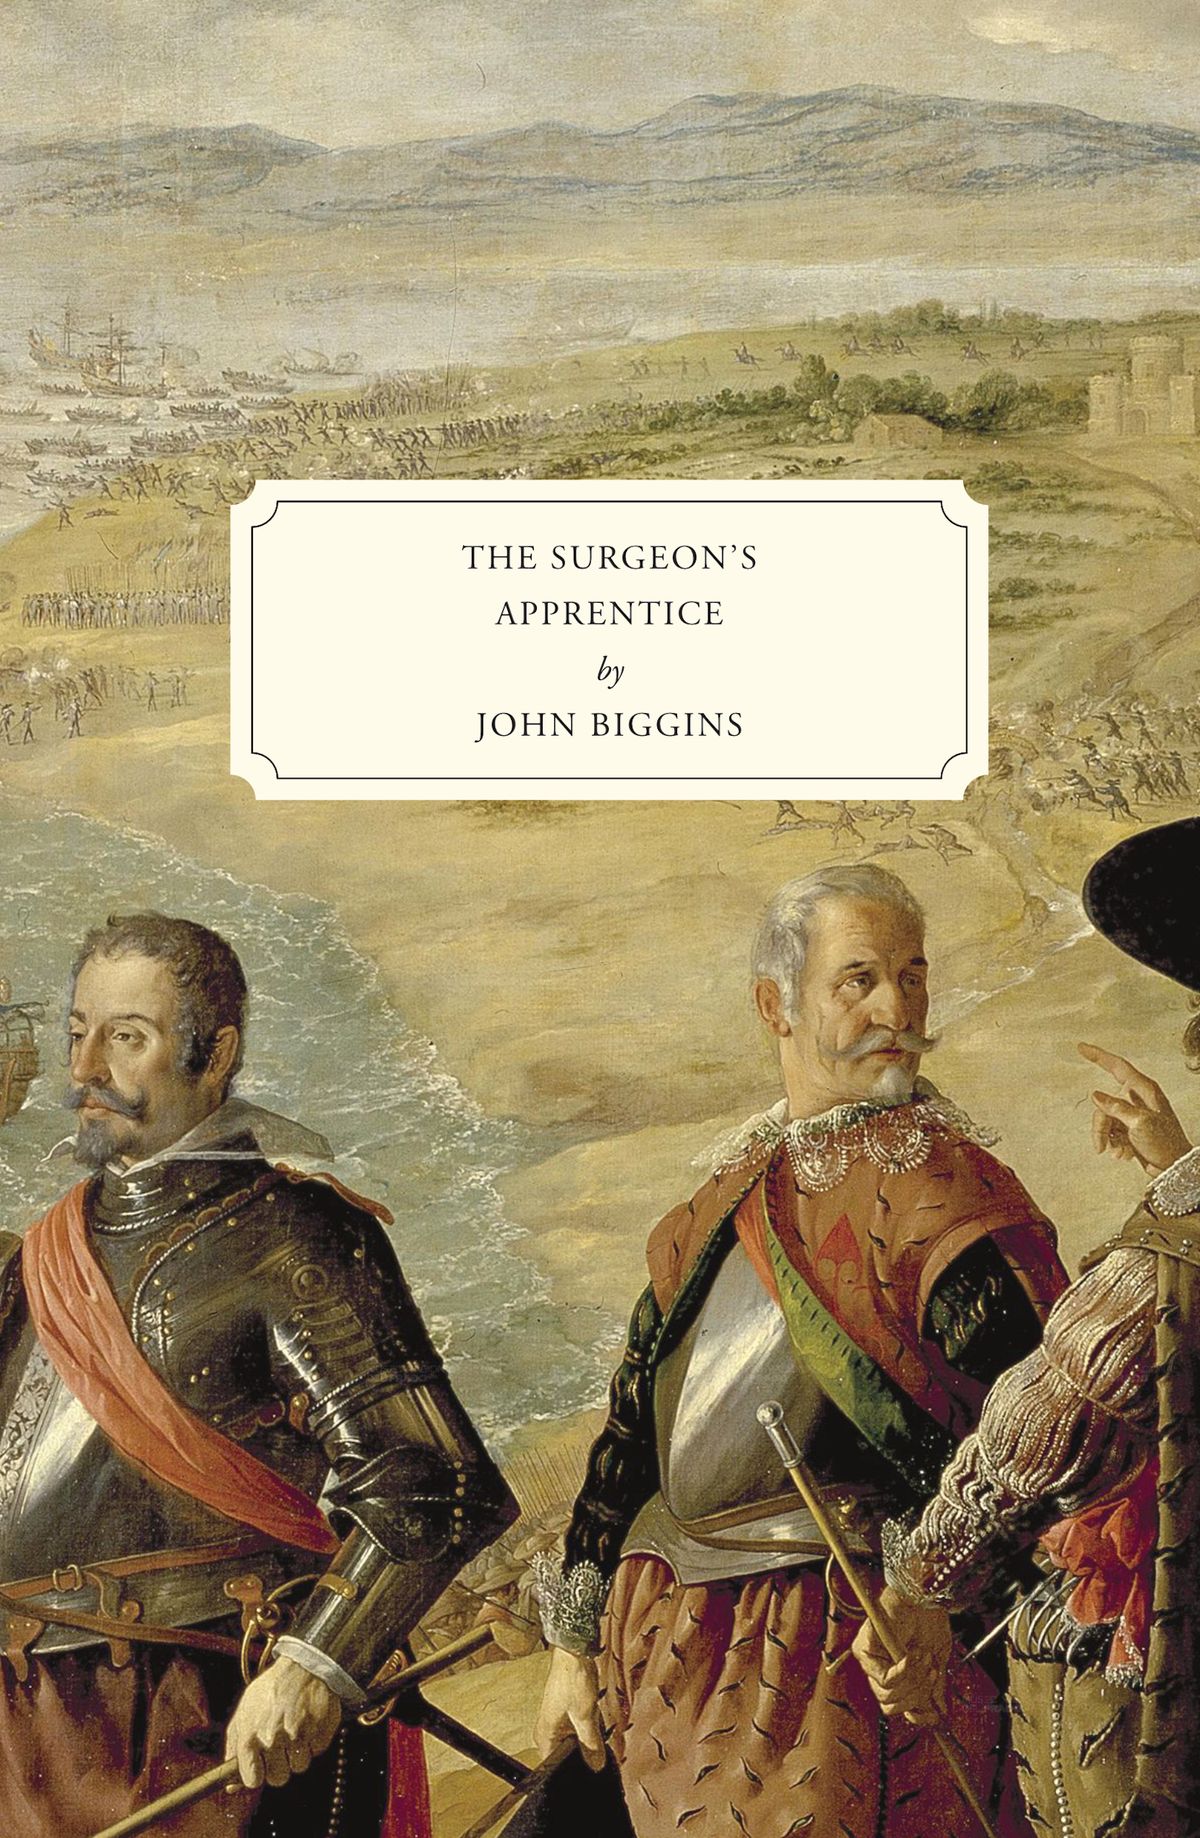 The Surgeon's Apprentice by John Biggins